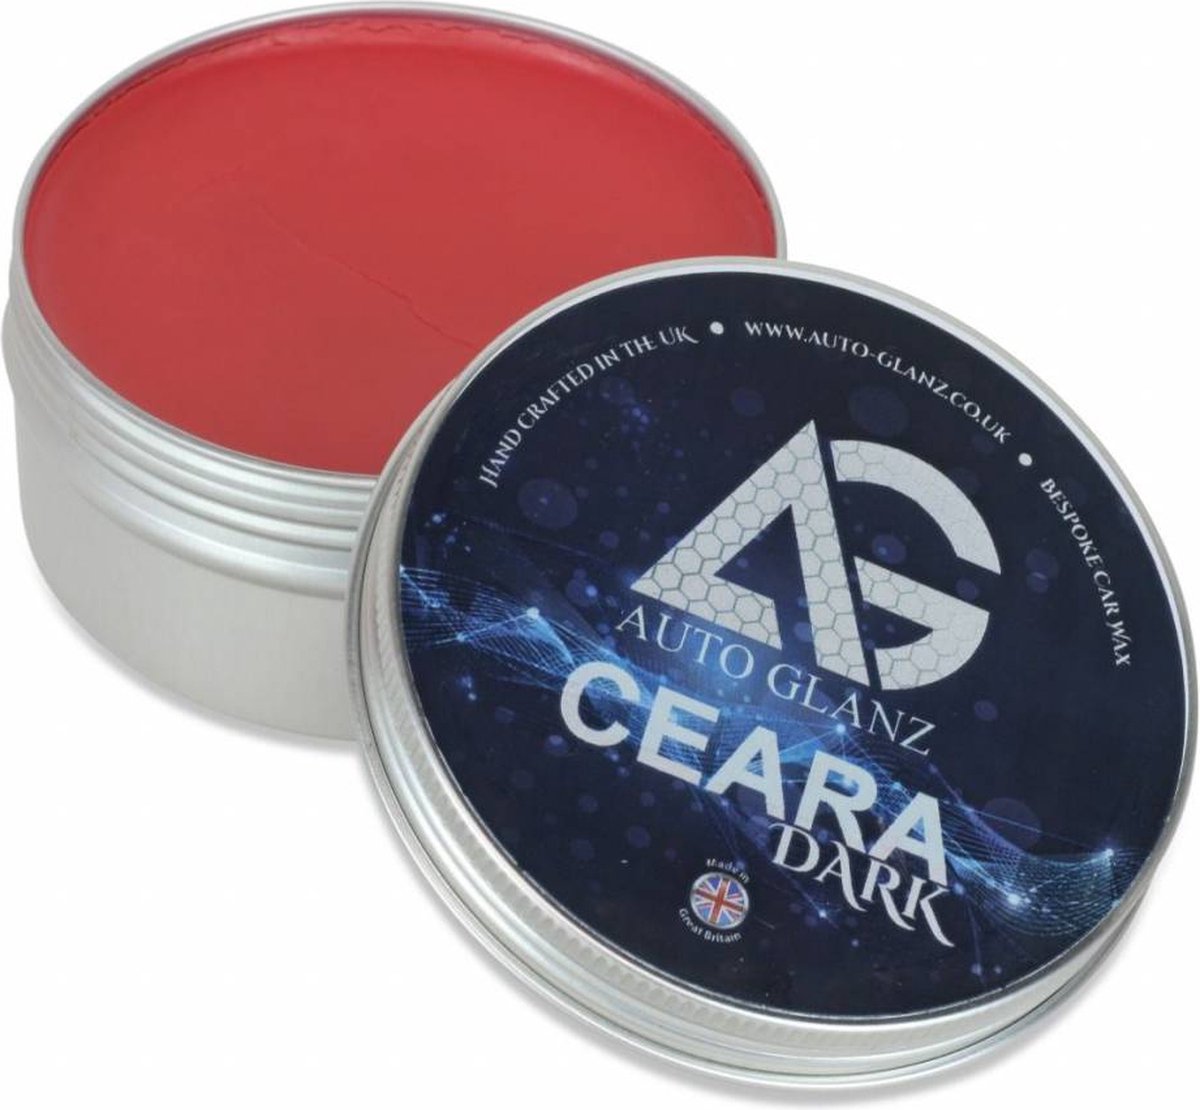 AutoGlanz Ceara DARK | Wax voor donkere lak - 150 ml